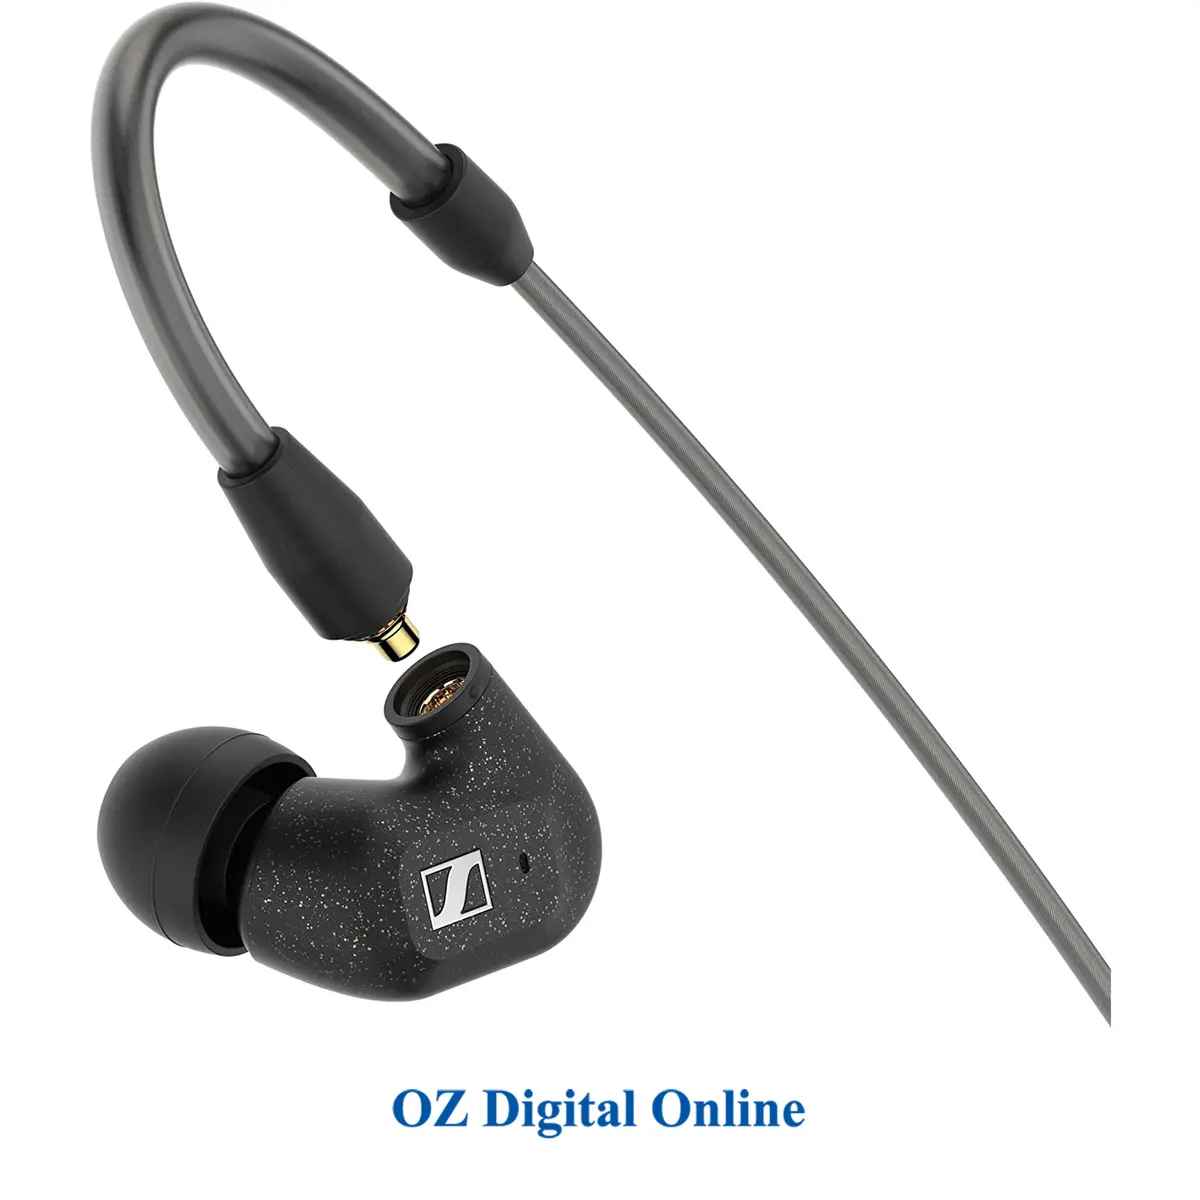 1. Sennheiser IE 300 In-Ear Headphones